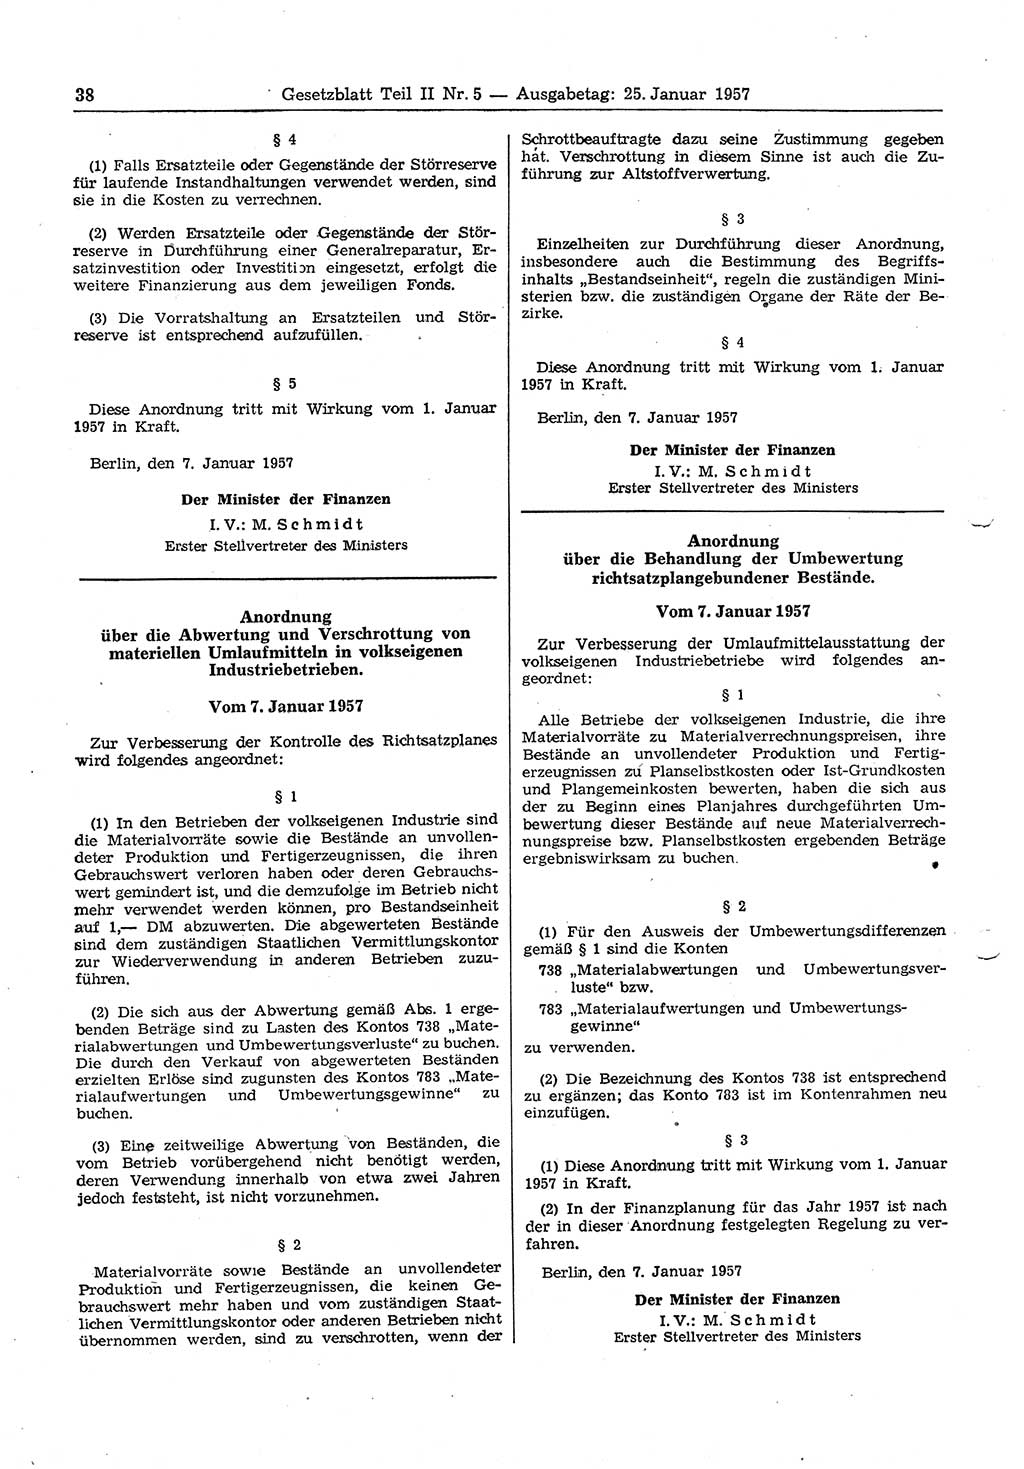 Gesetzblatt (GBl.) der Deutschen Demokratischen Republik (DDR) Teil ⅠⅠ 1957, Seite 38 (GBl. DDR ⅠⅠ 1957, S. 38)